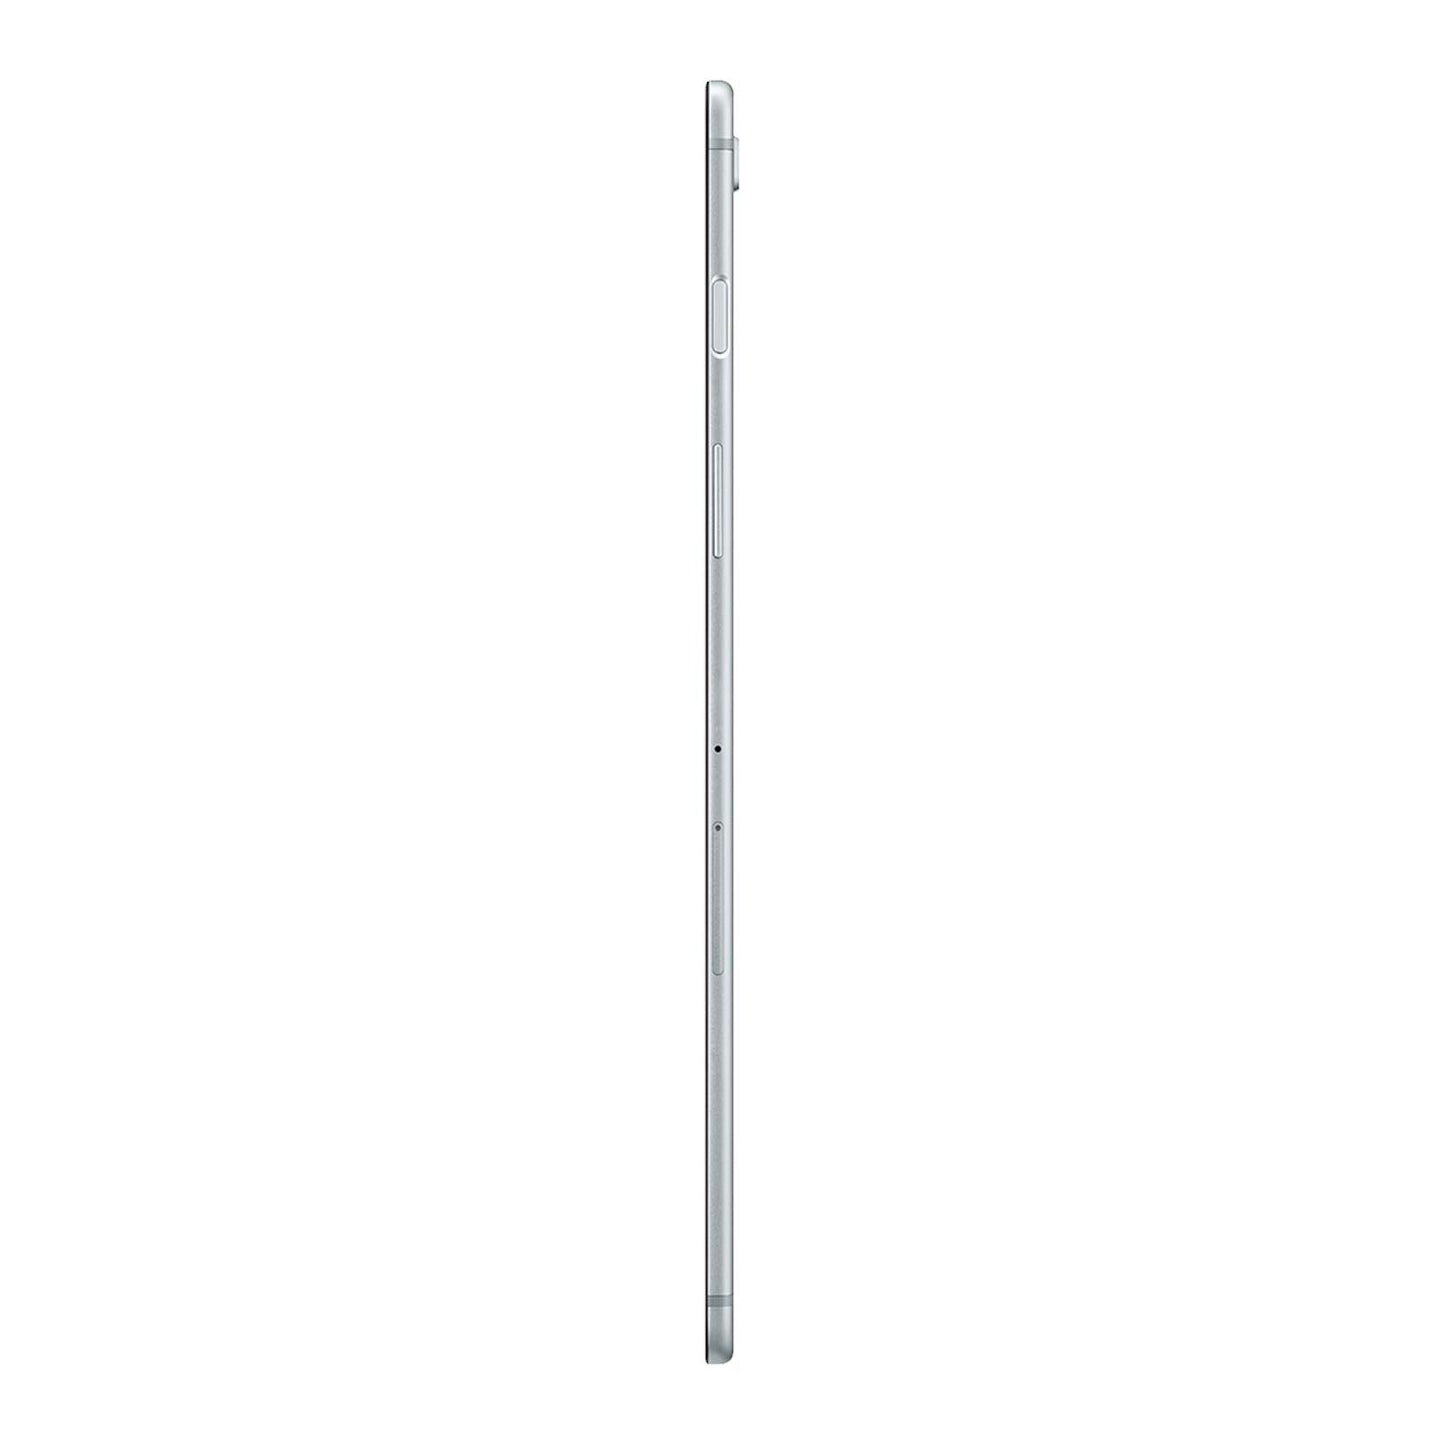 Samsung Galaxy Tab S5e 10.5-in Tablet 64 GB Silver - 2019